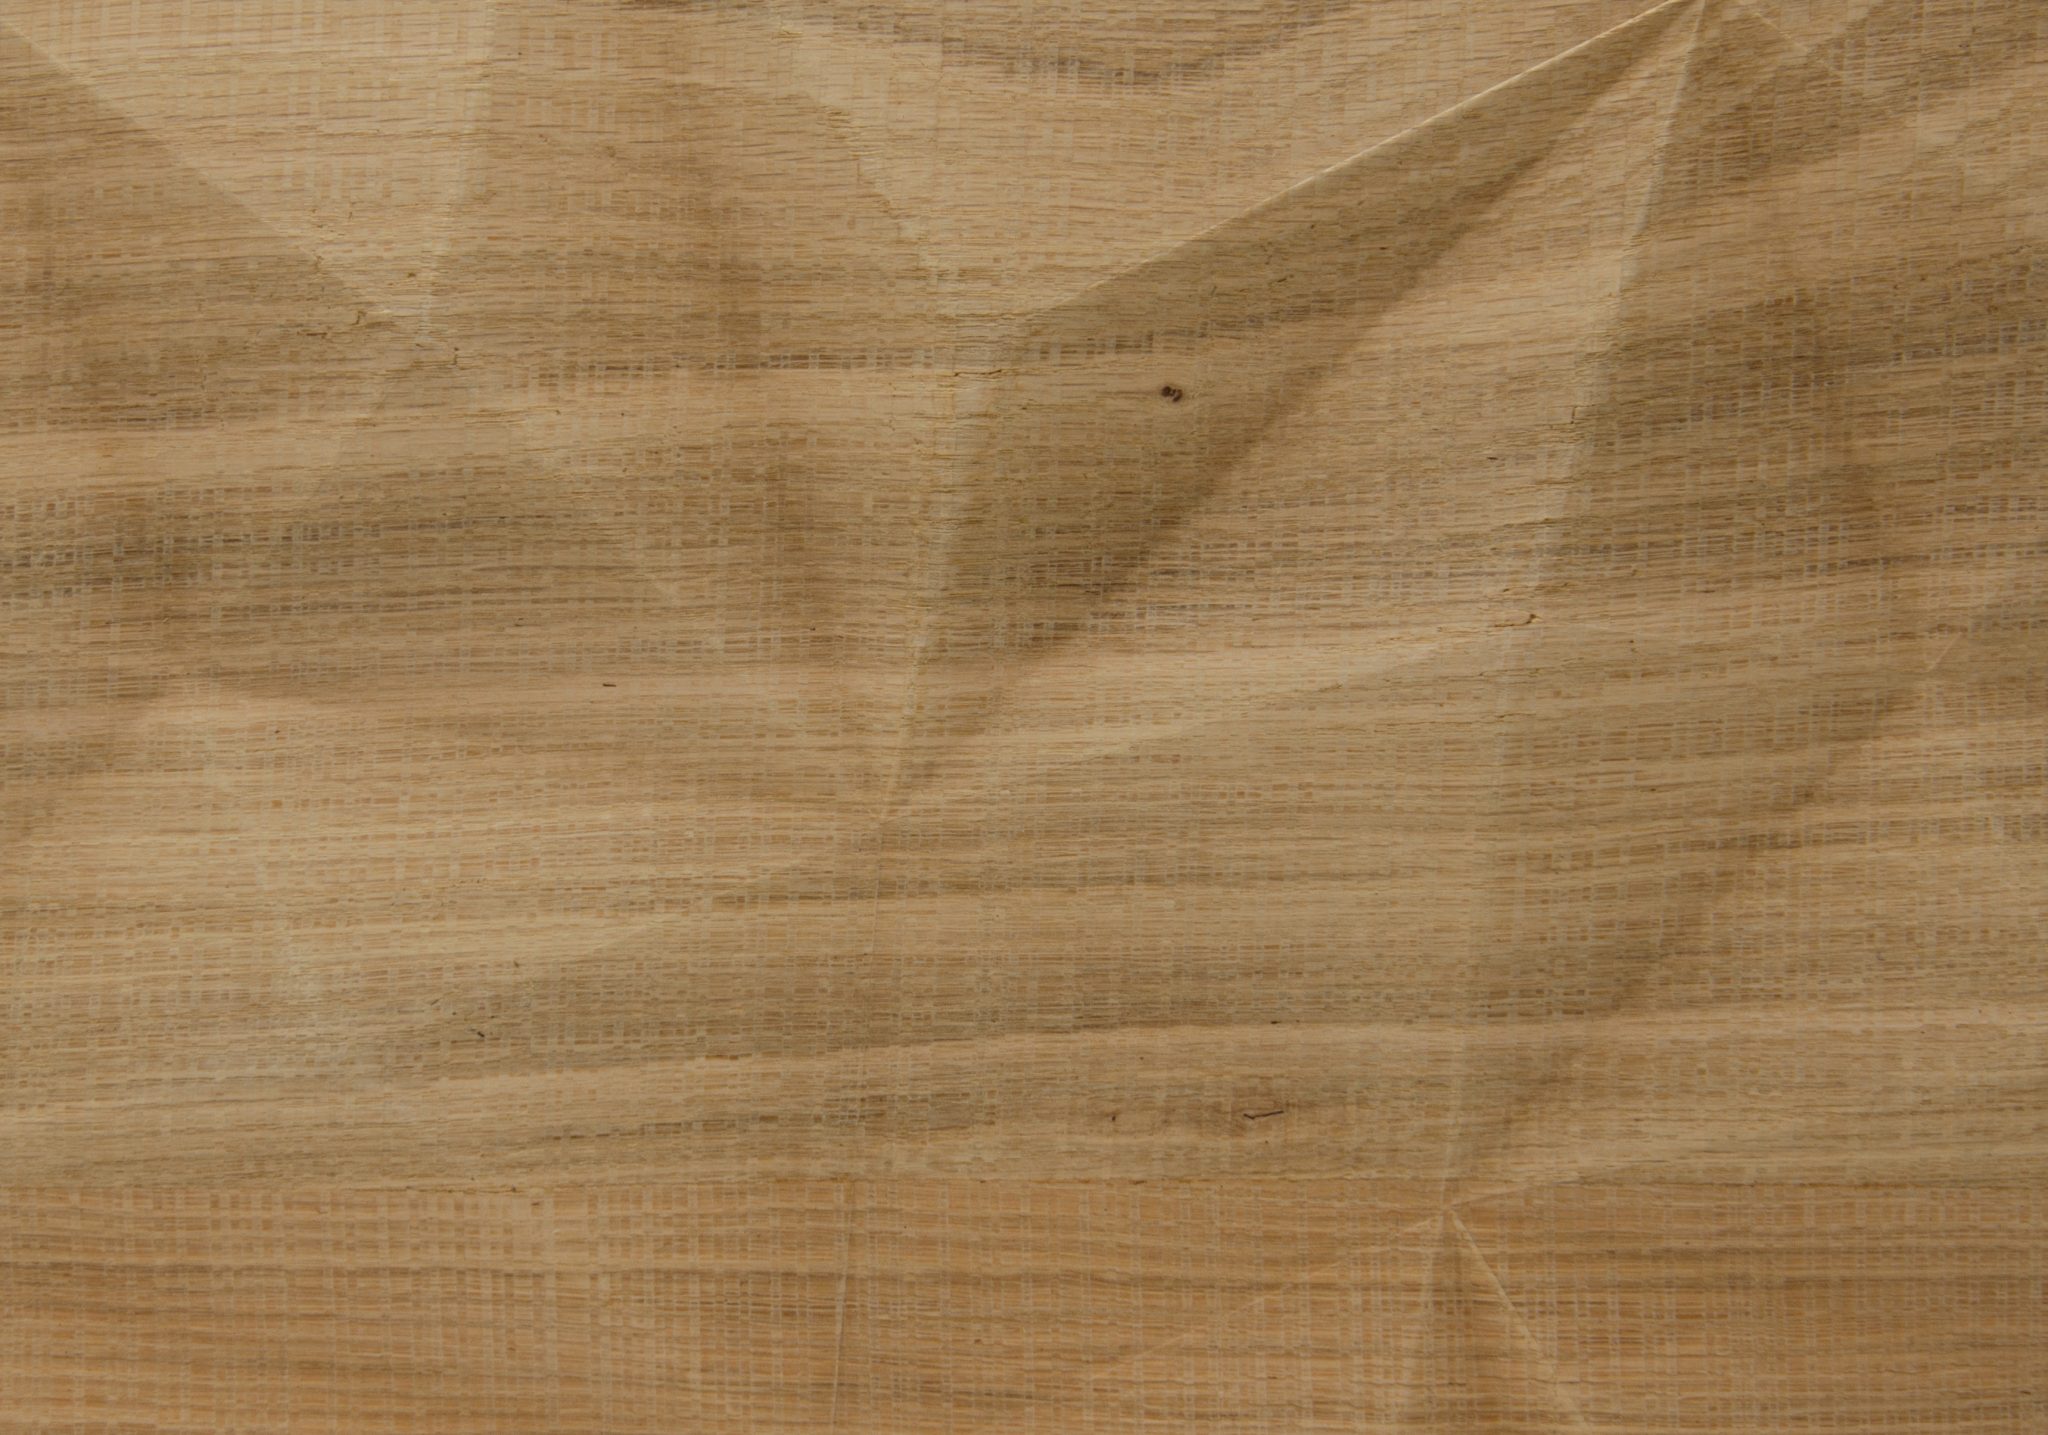 2551 - BIG DIAMOND - Knob Oak - Real wood veneer